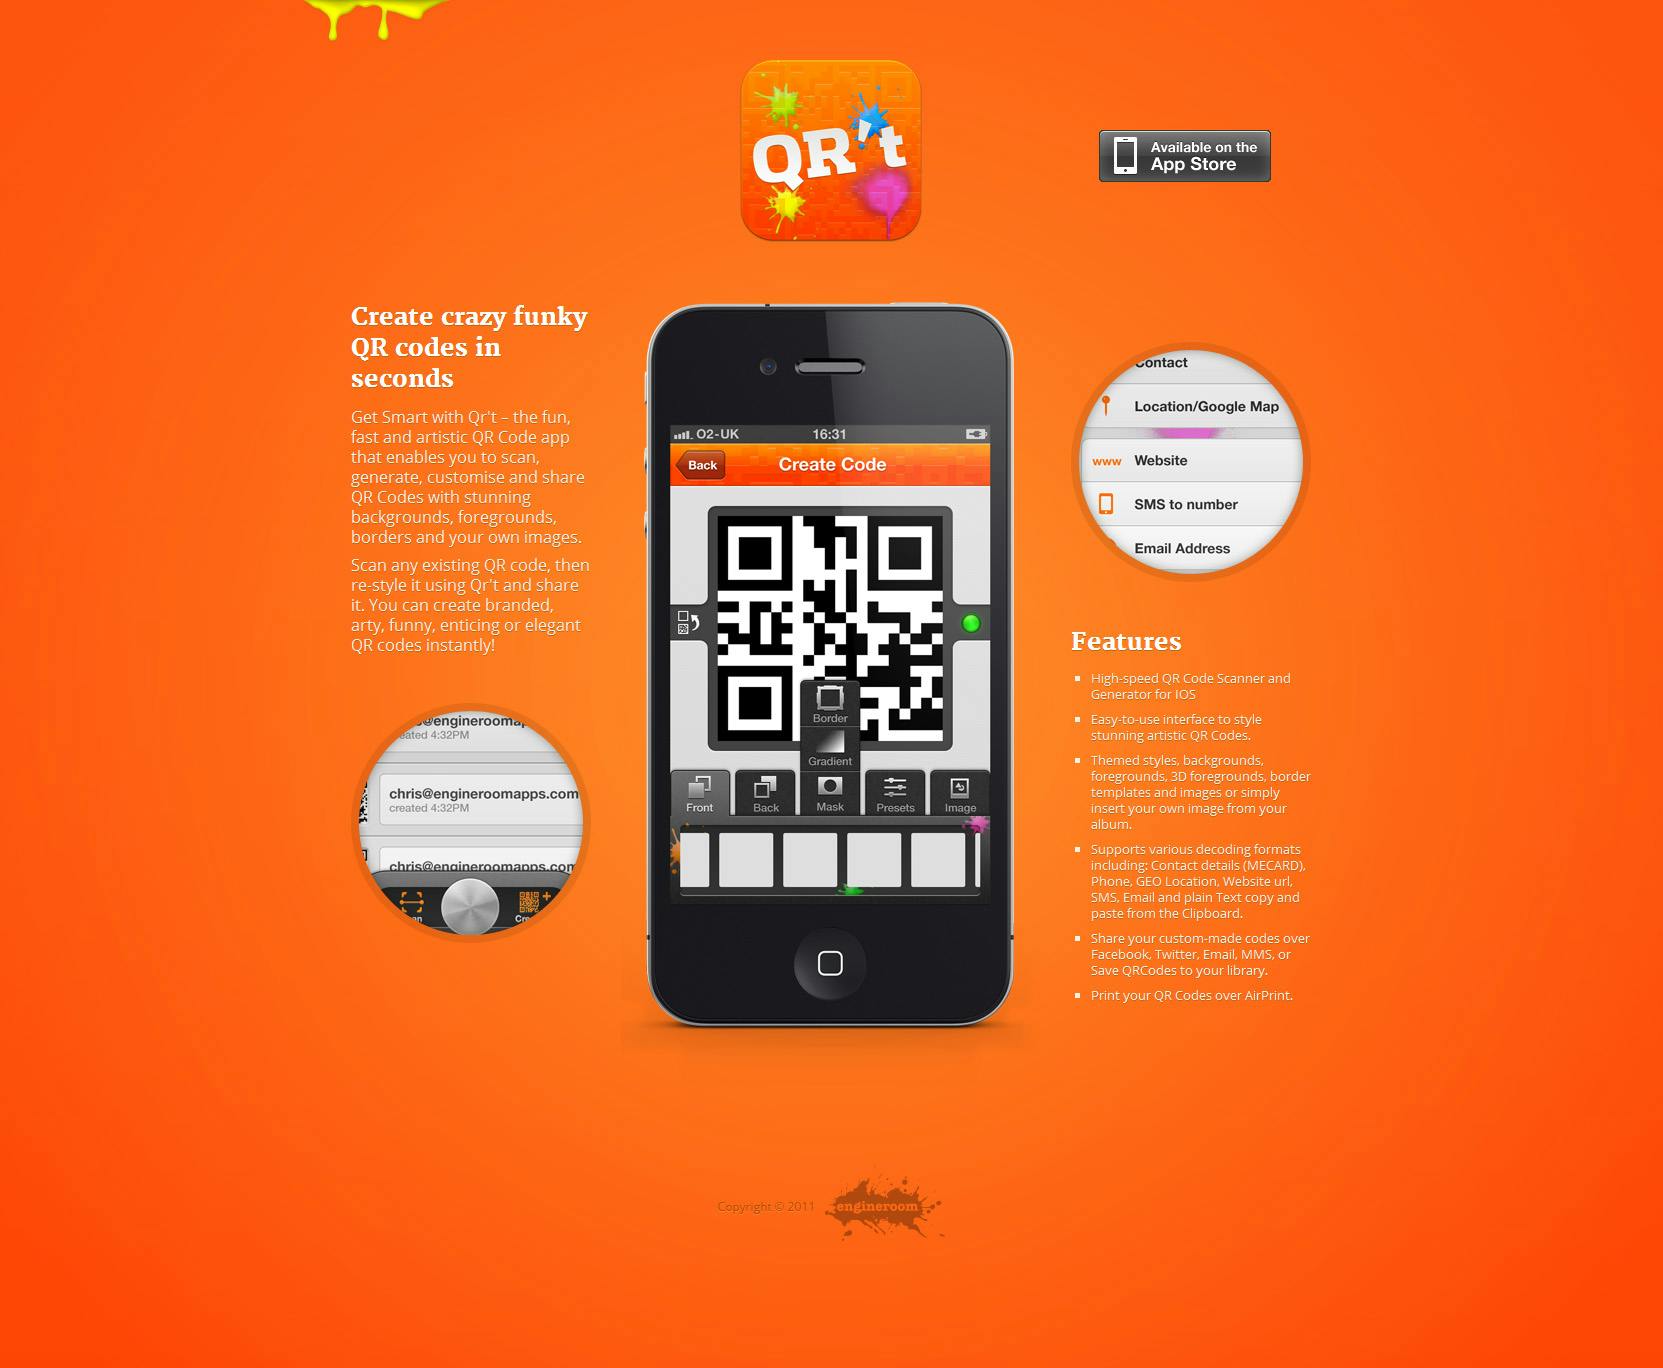 Qr’t Website Screenshot